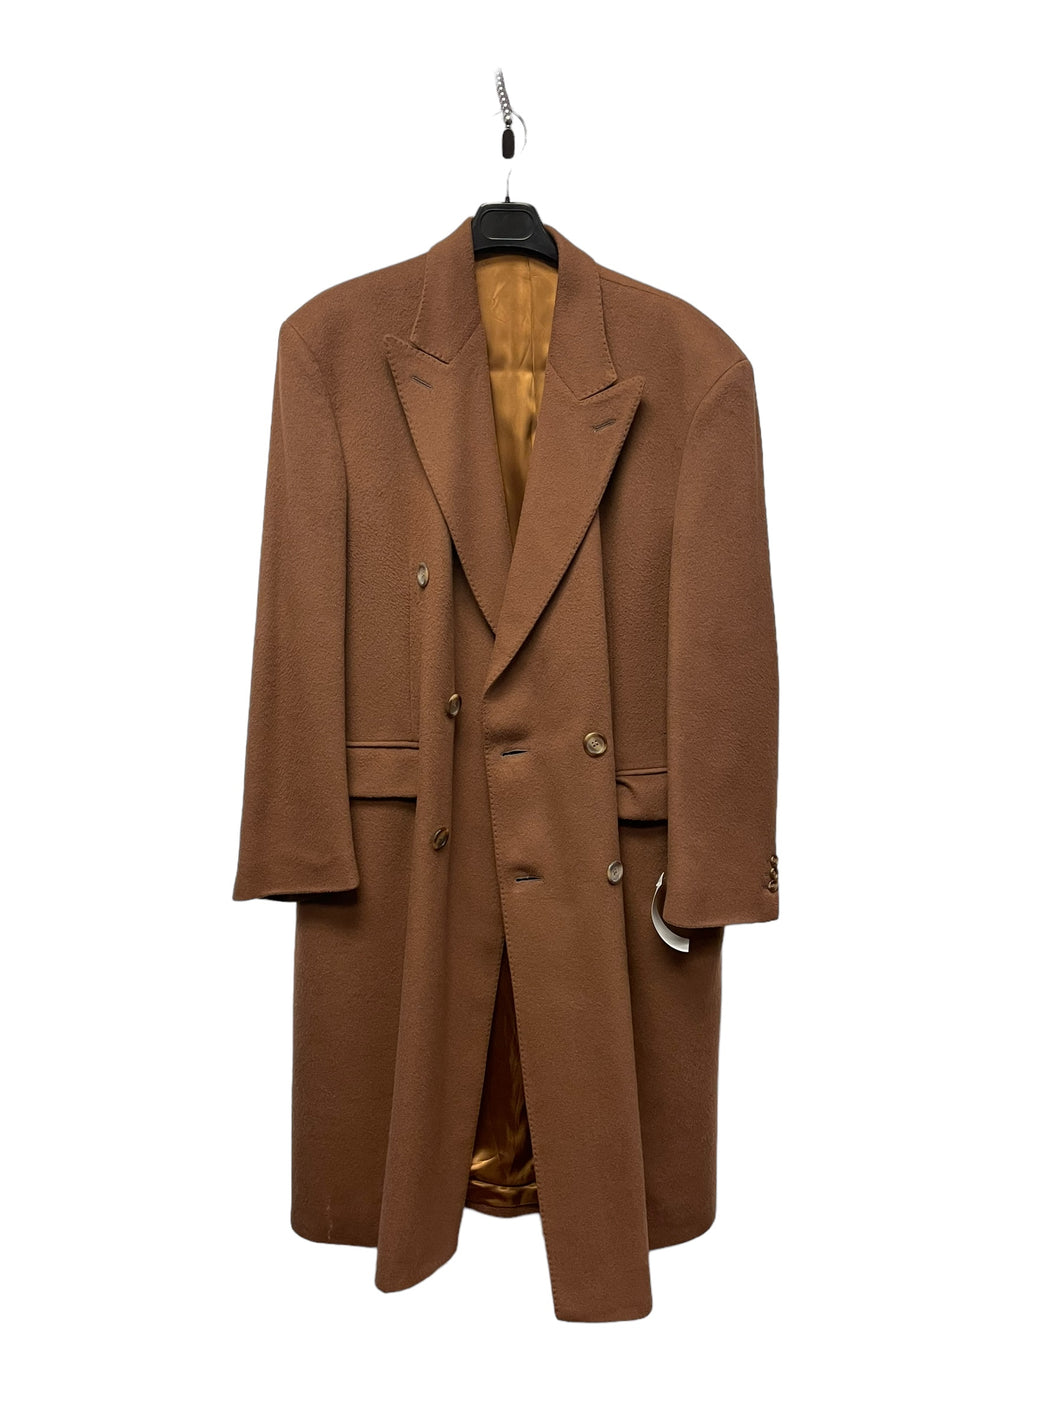 Burberry Men’s Overcoat. Size 44